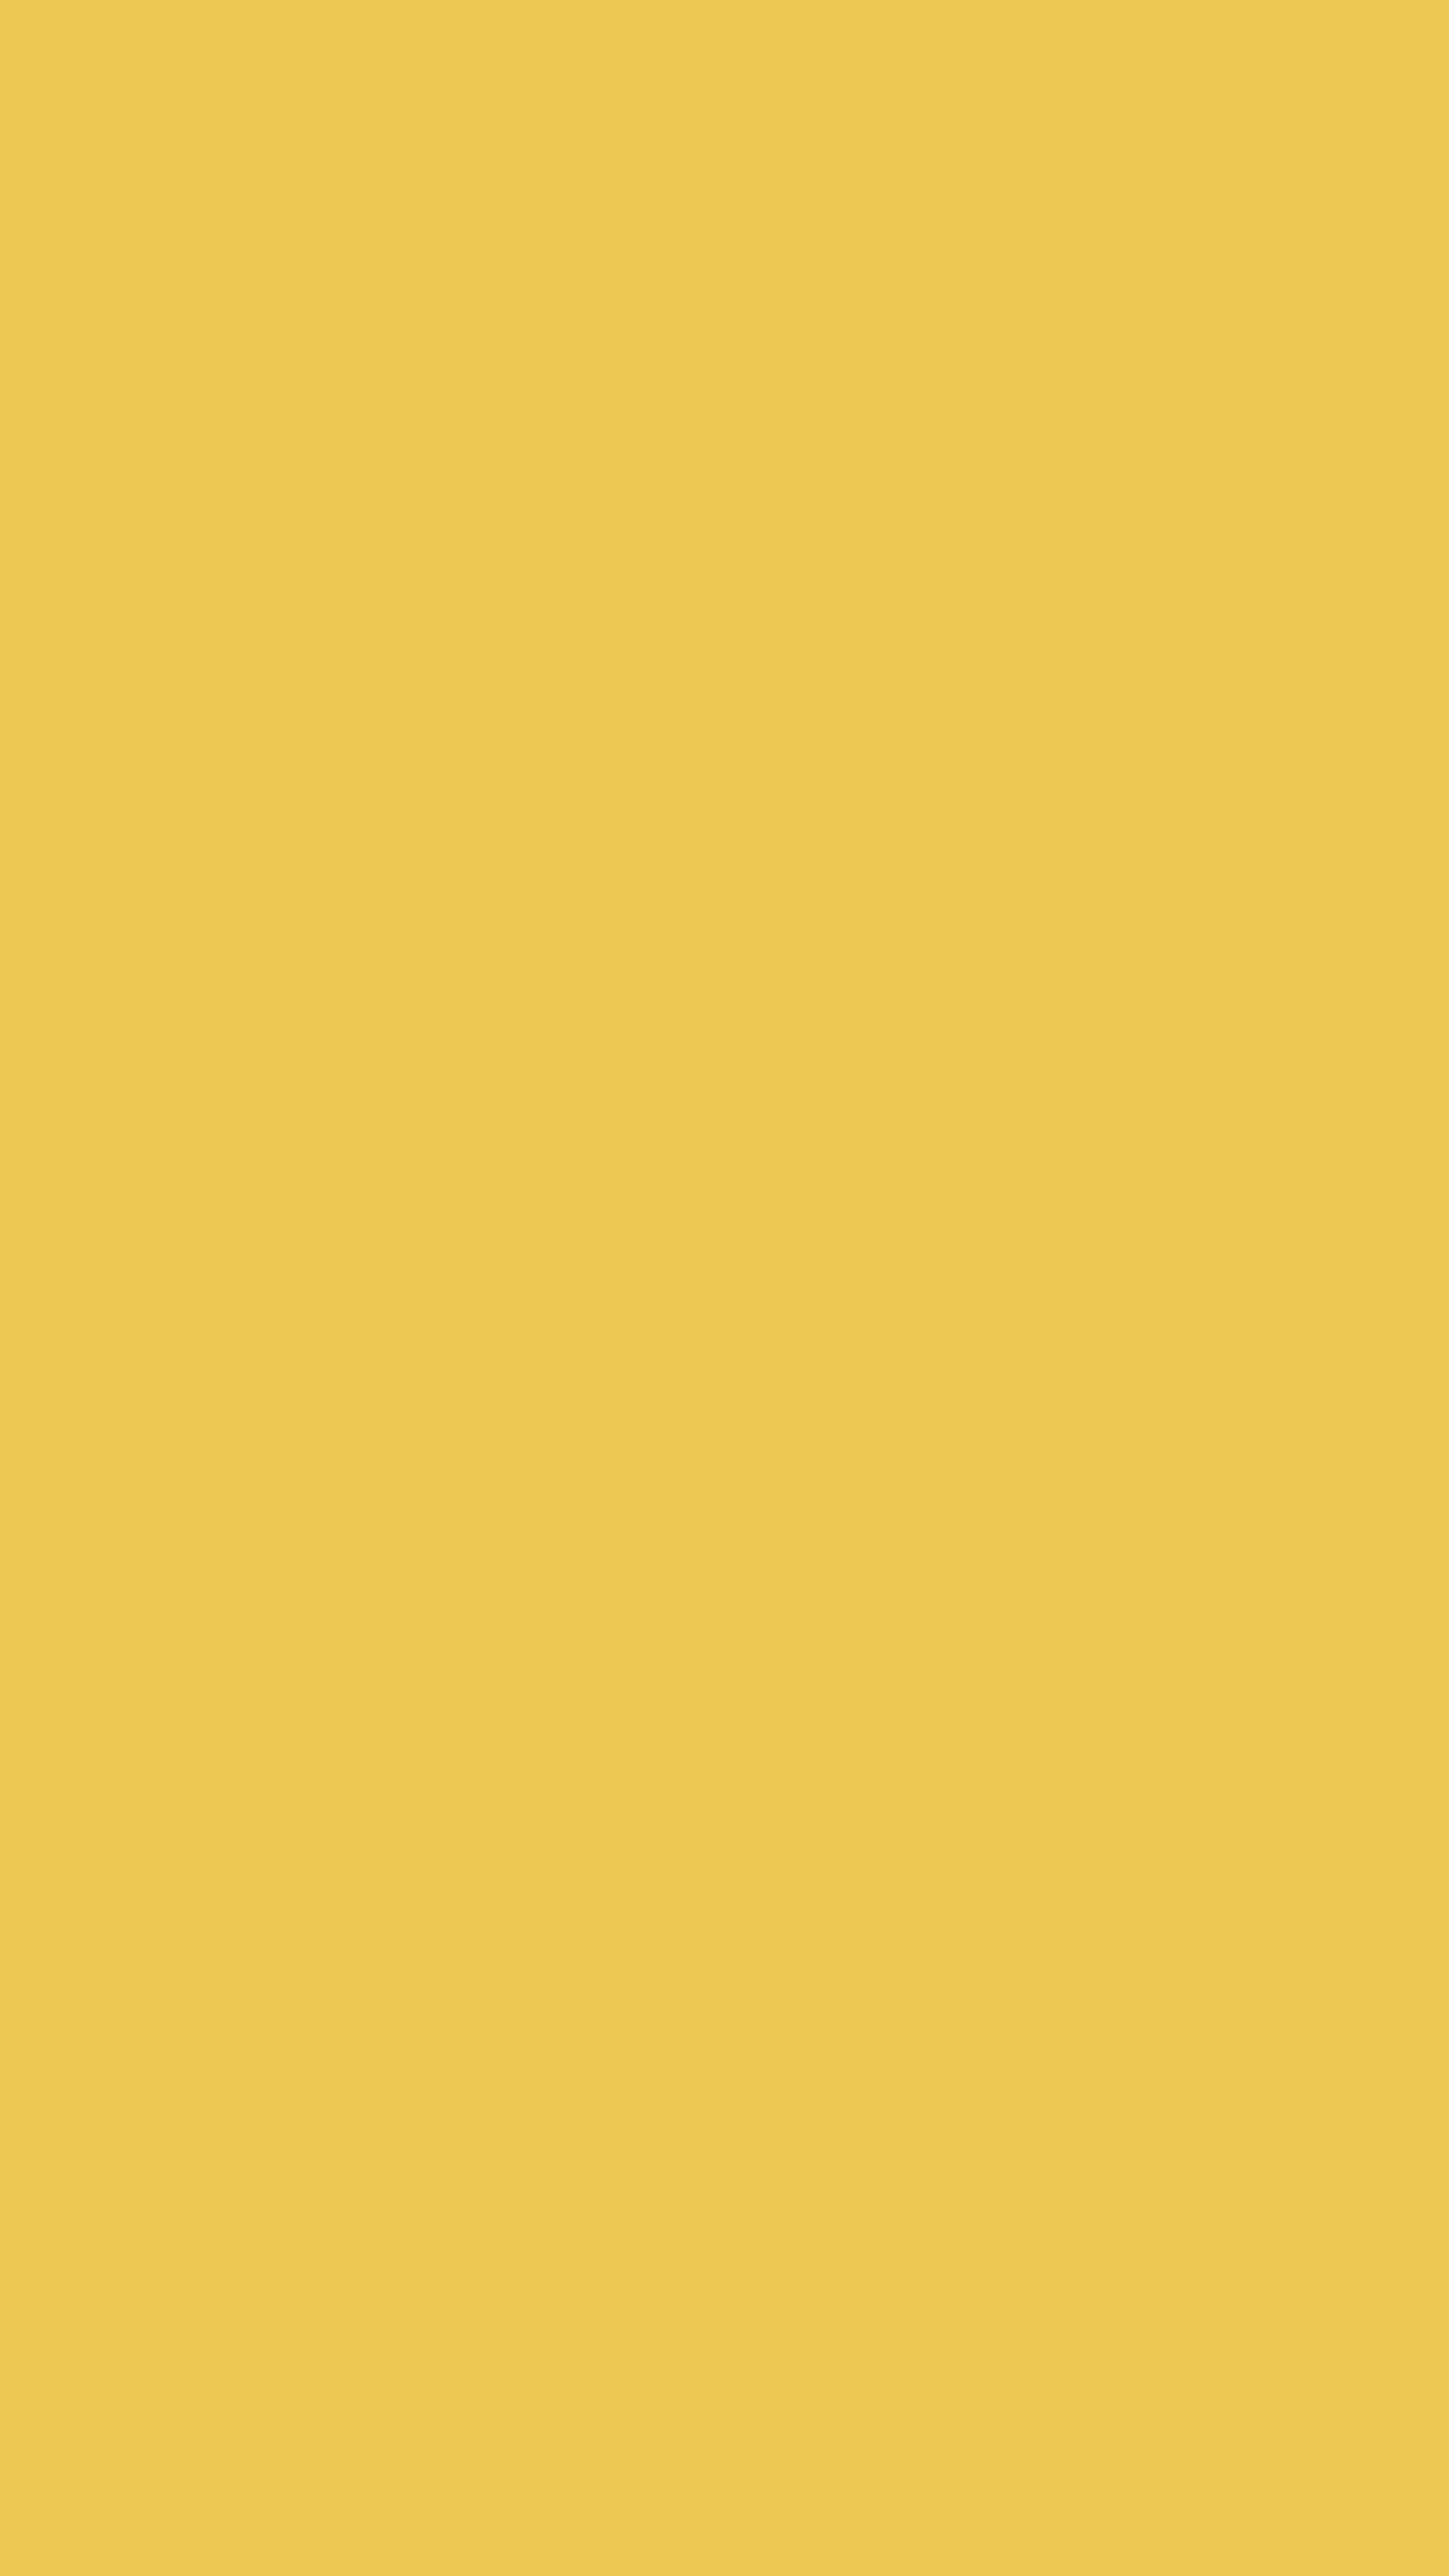 154591 免費下載 黄色 手機壁紙，颜色, 背景, 黄色的, 色调 黄色 圖像和手機屏保